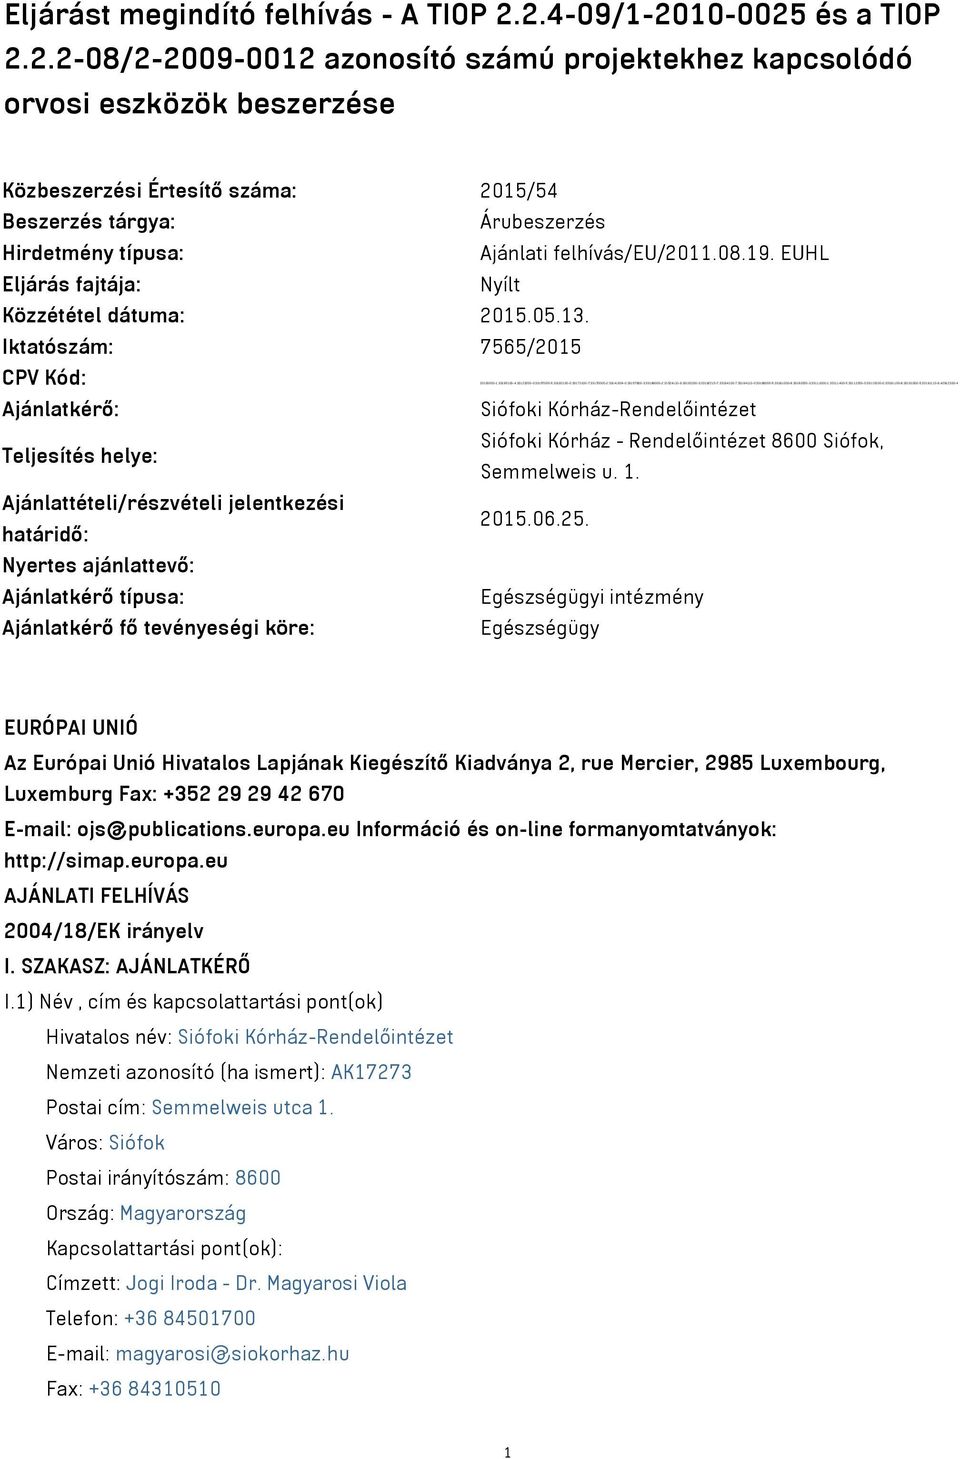 08.19. EUHL Eljárás fajtája: Nyílt Közzététel dátuma: 2015.05.13.